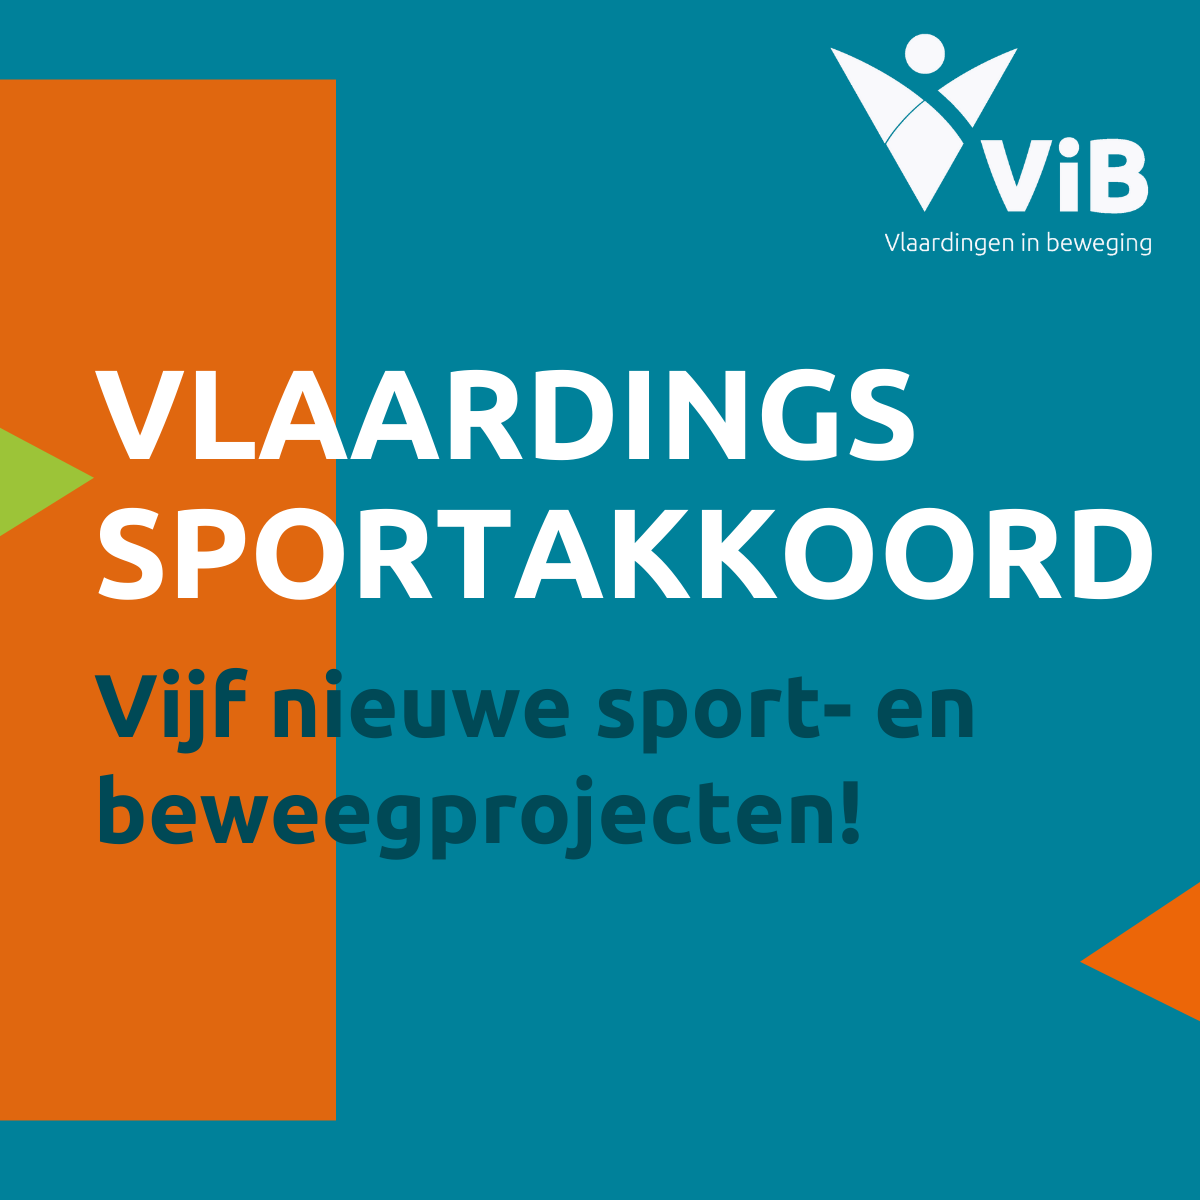 Vijf nieuwe sport- en beweegprojecten dankzij Vlaardings Sportakkoord